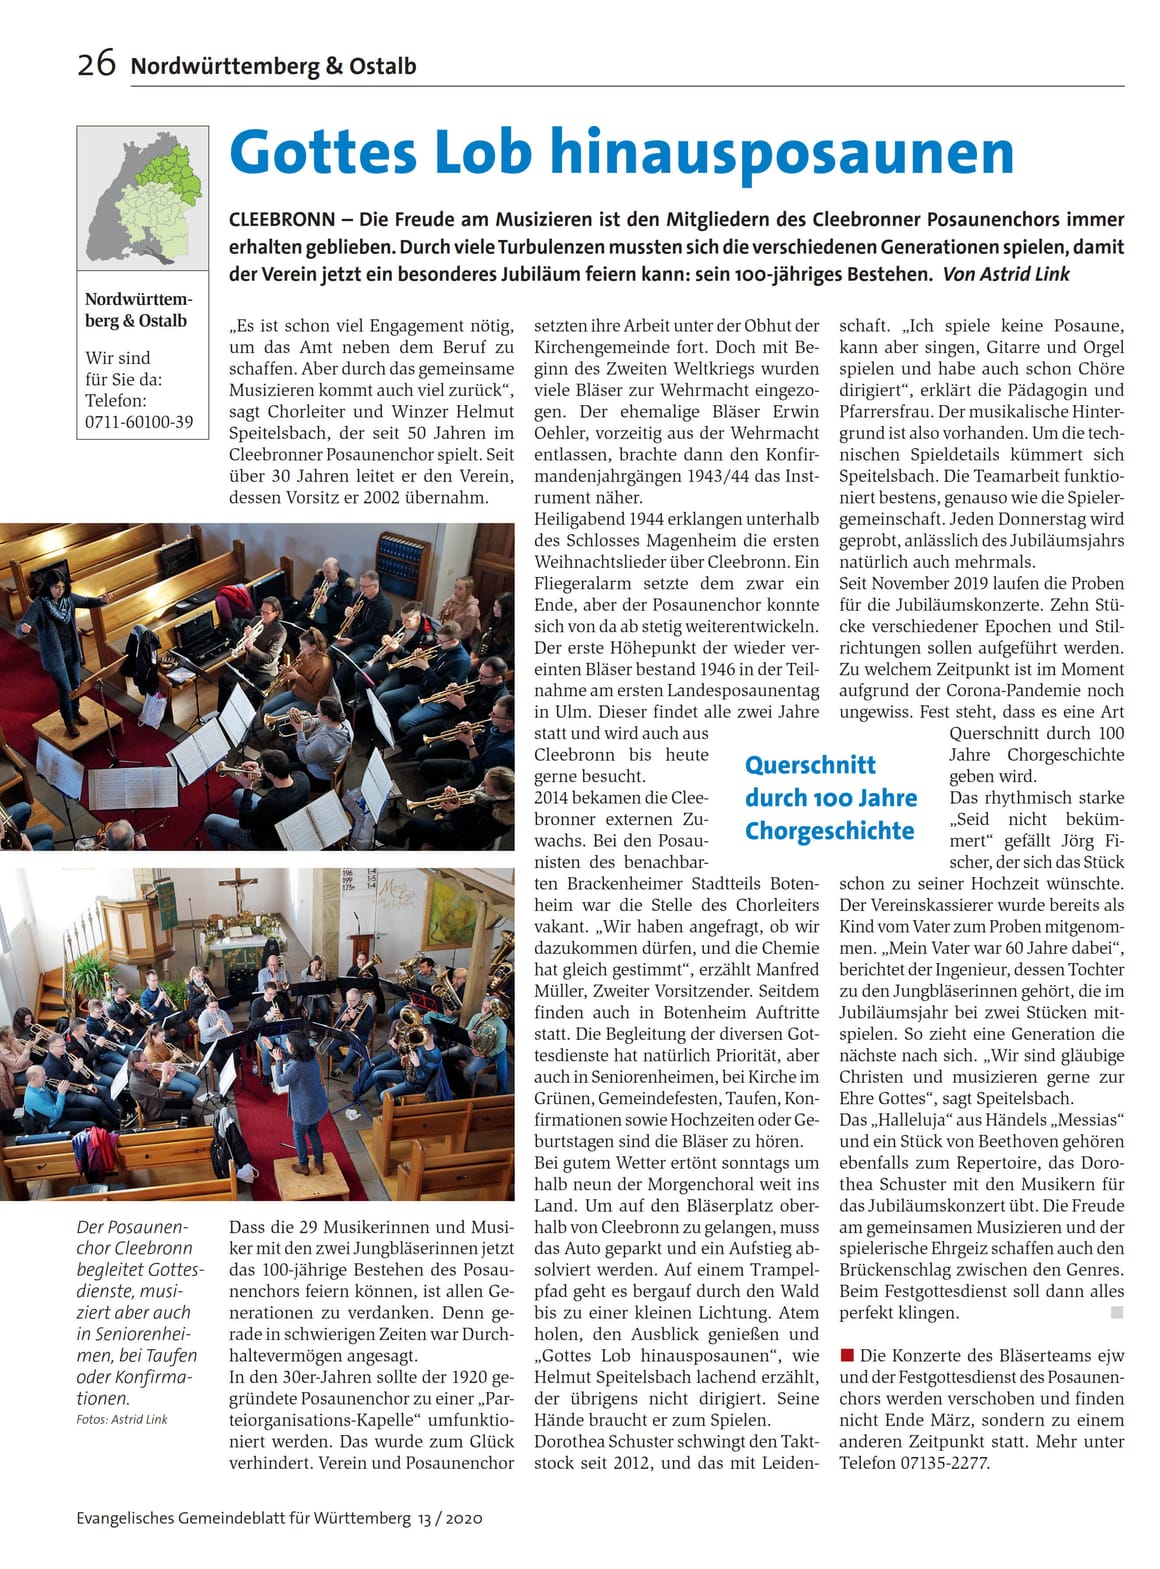 Evangelisches Gemeindeblatt - Ausgabe 13 - 29.03.2020